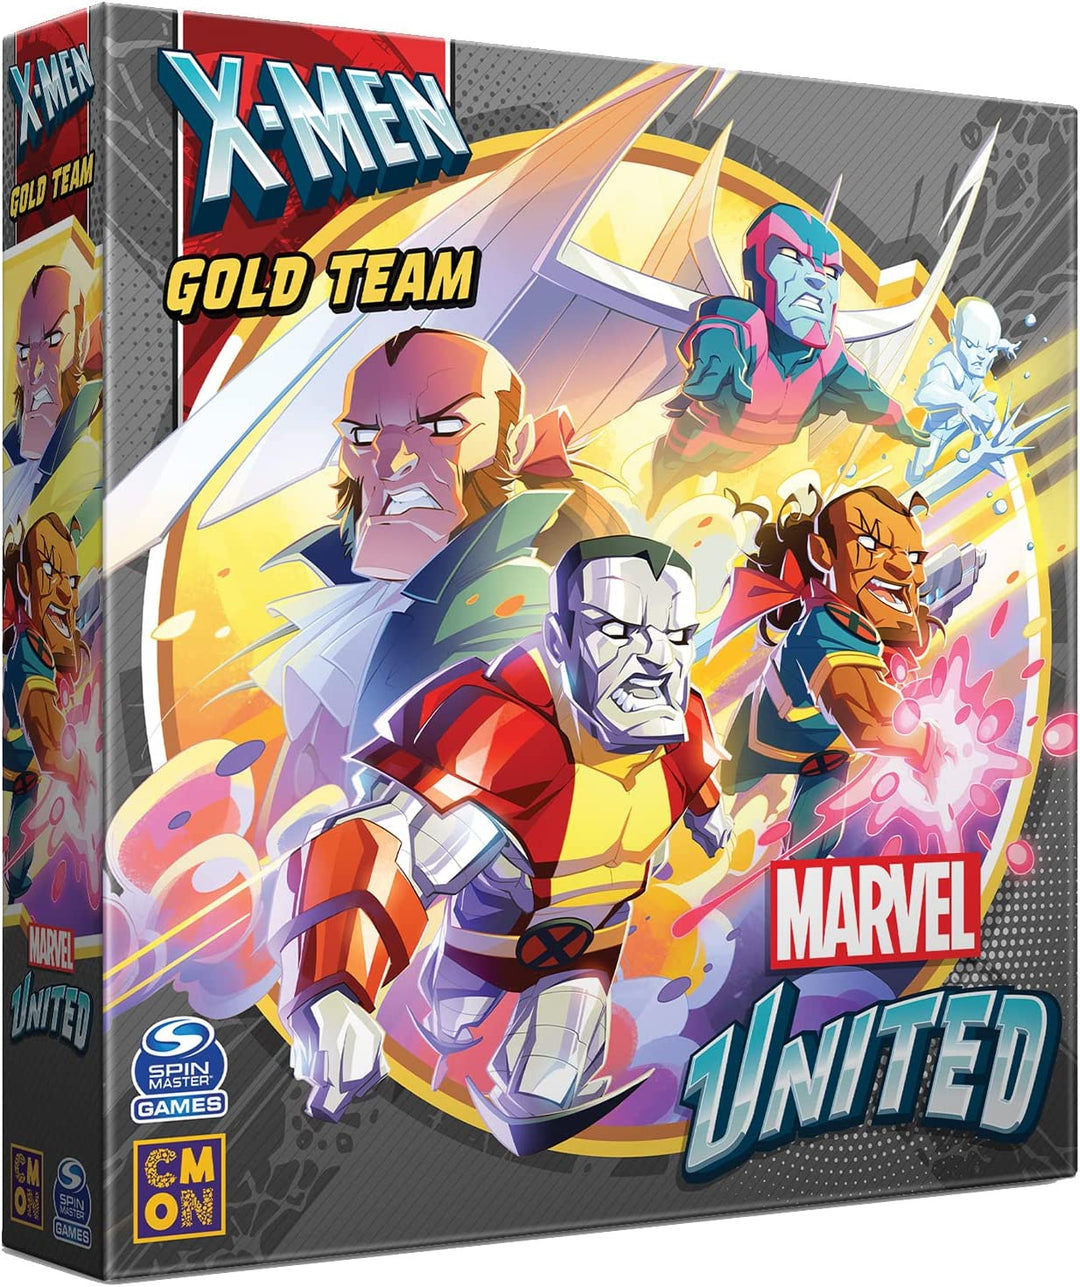 Marvel United X-Men Gold Team Expansion